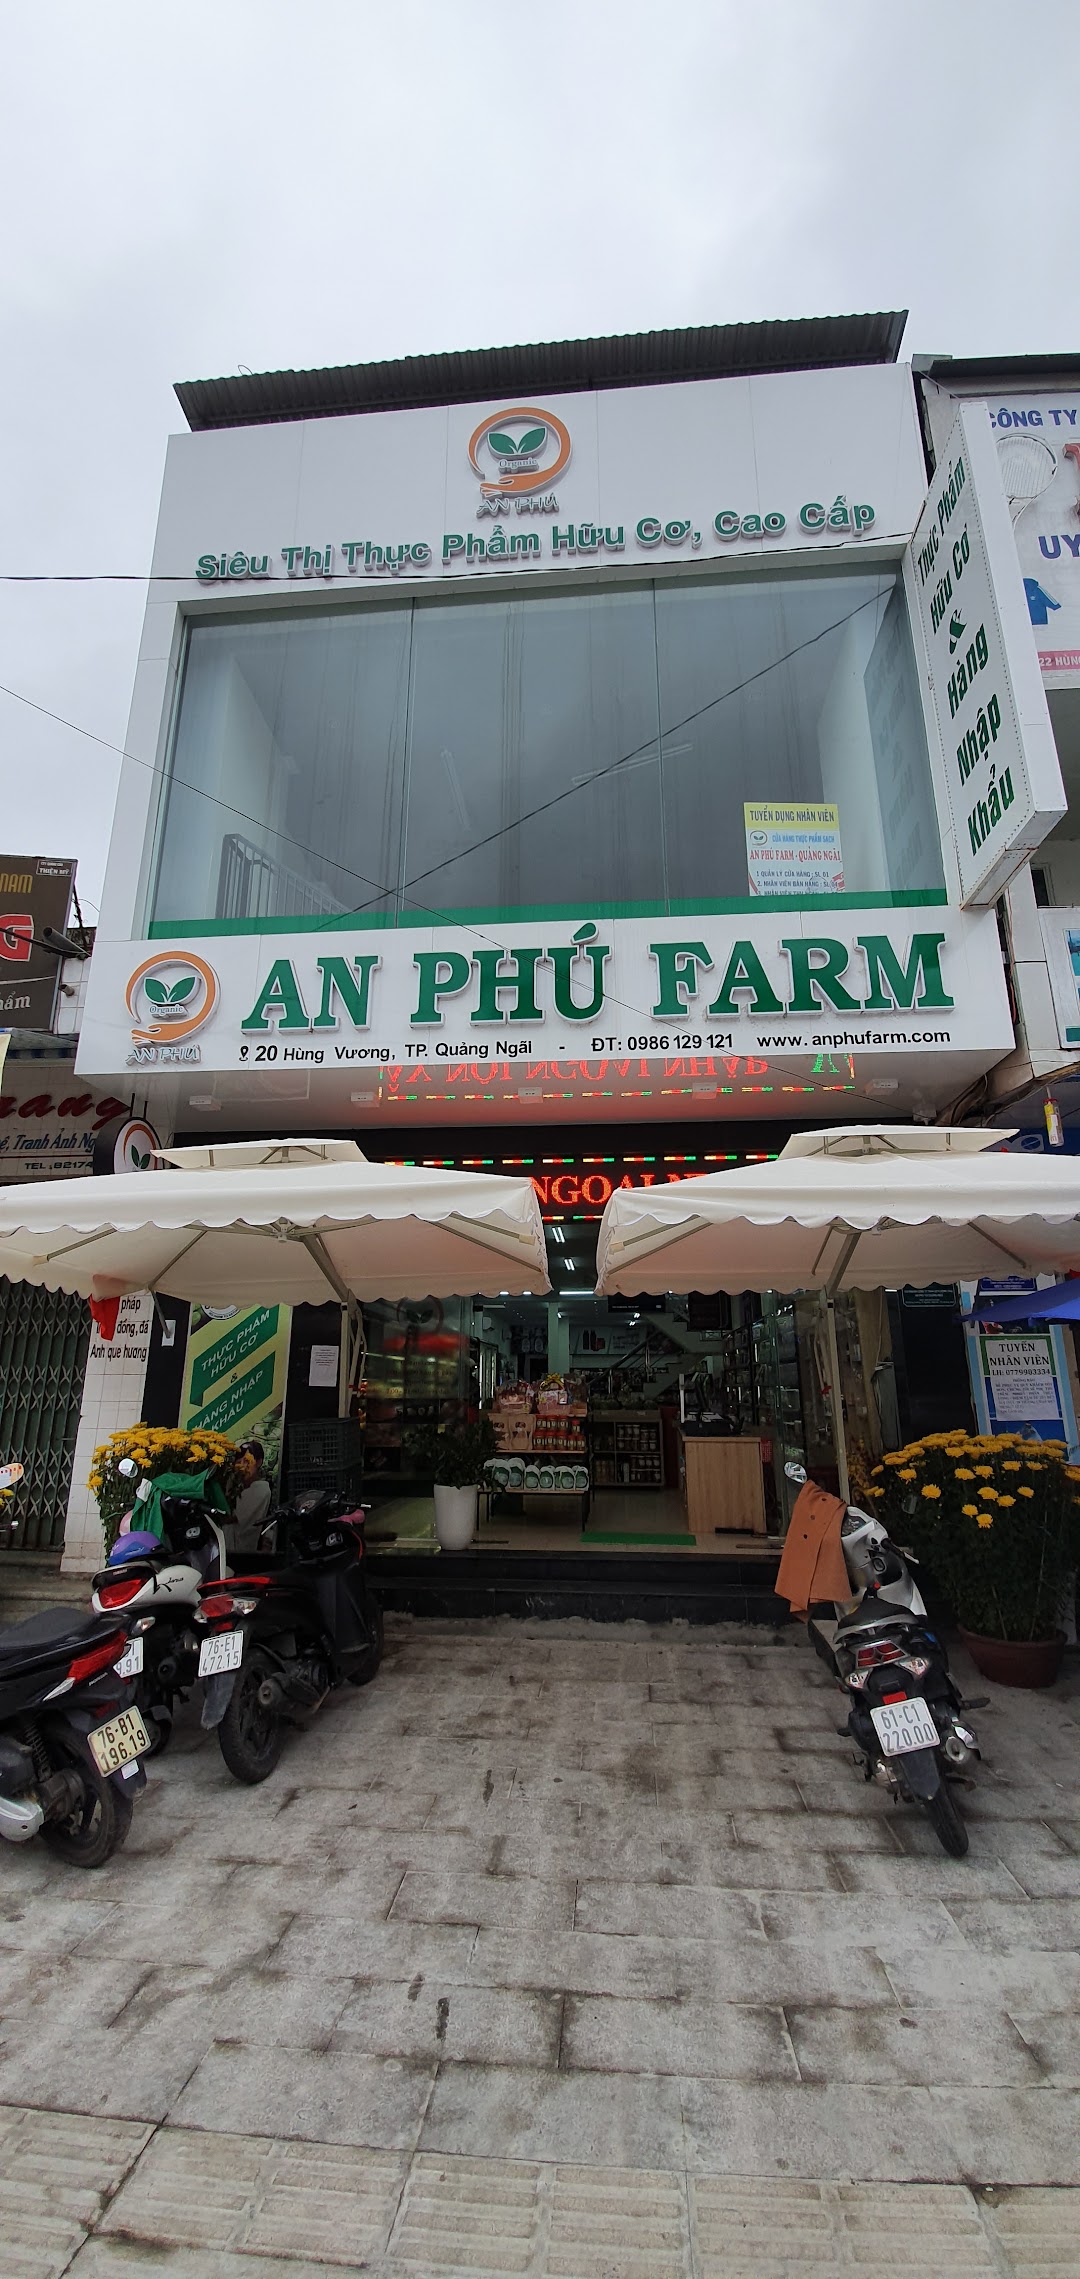 An Phú Farm - Quảng Ngãi